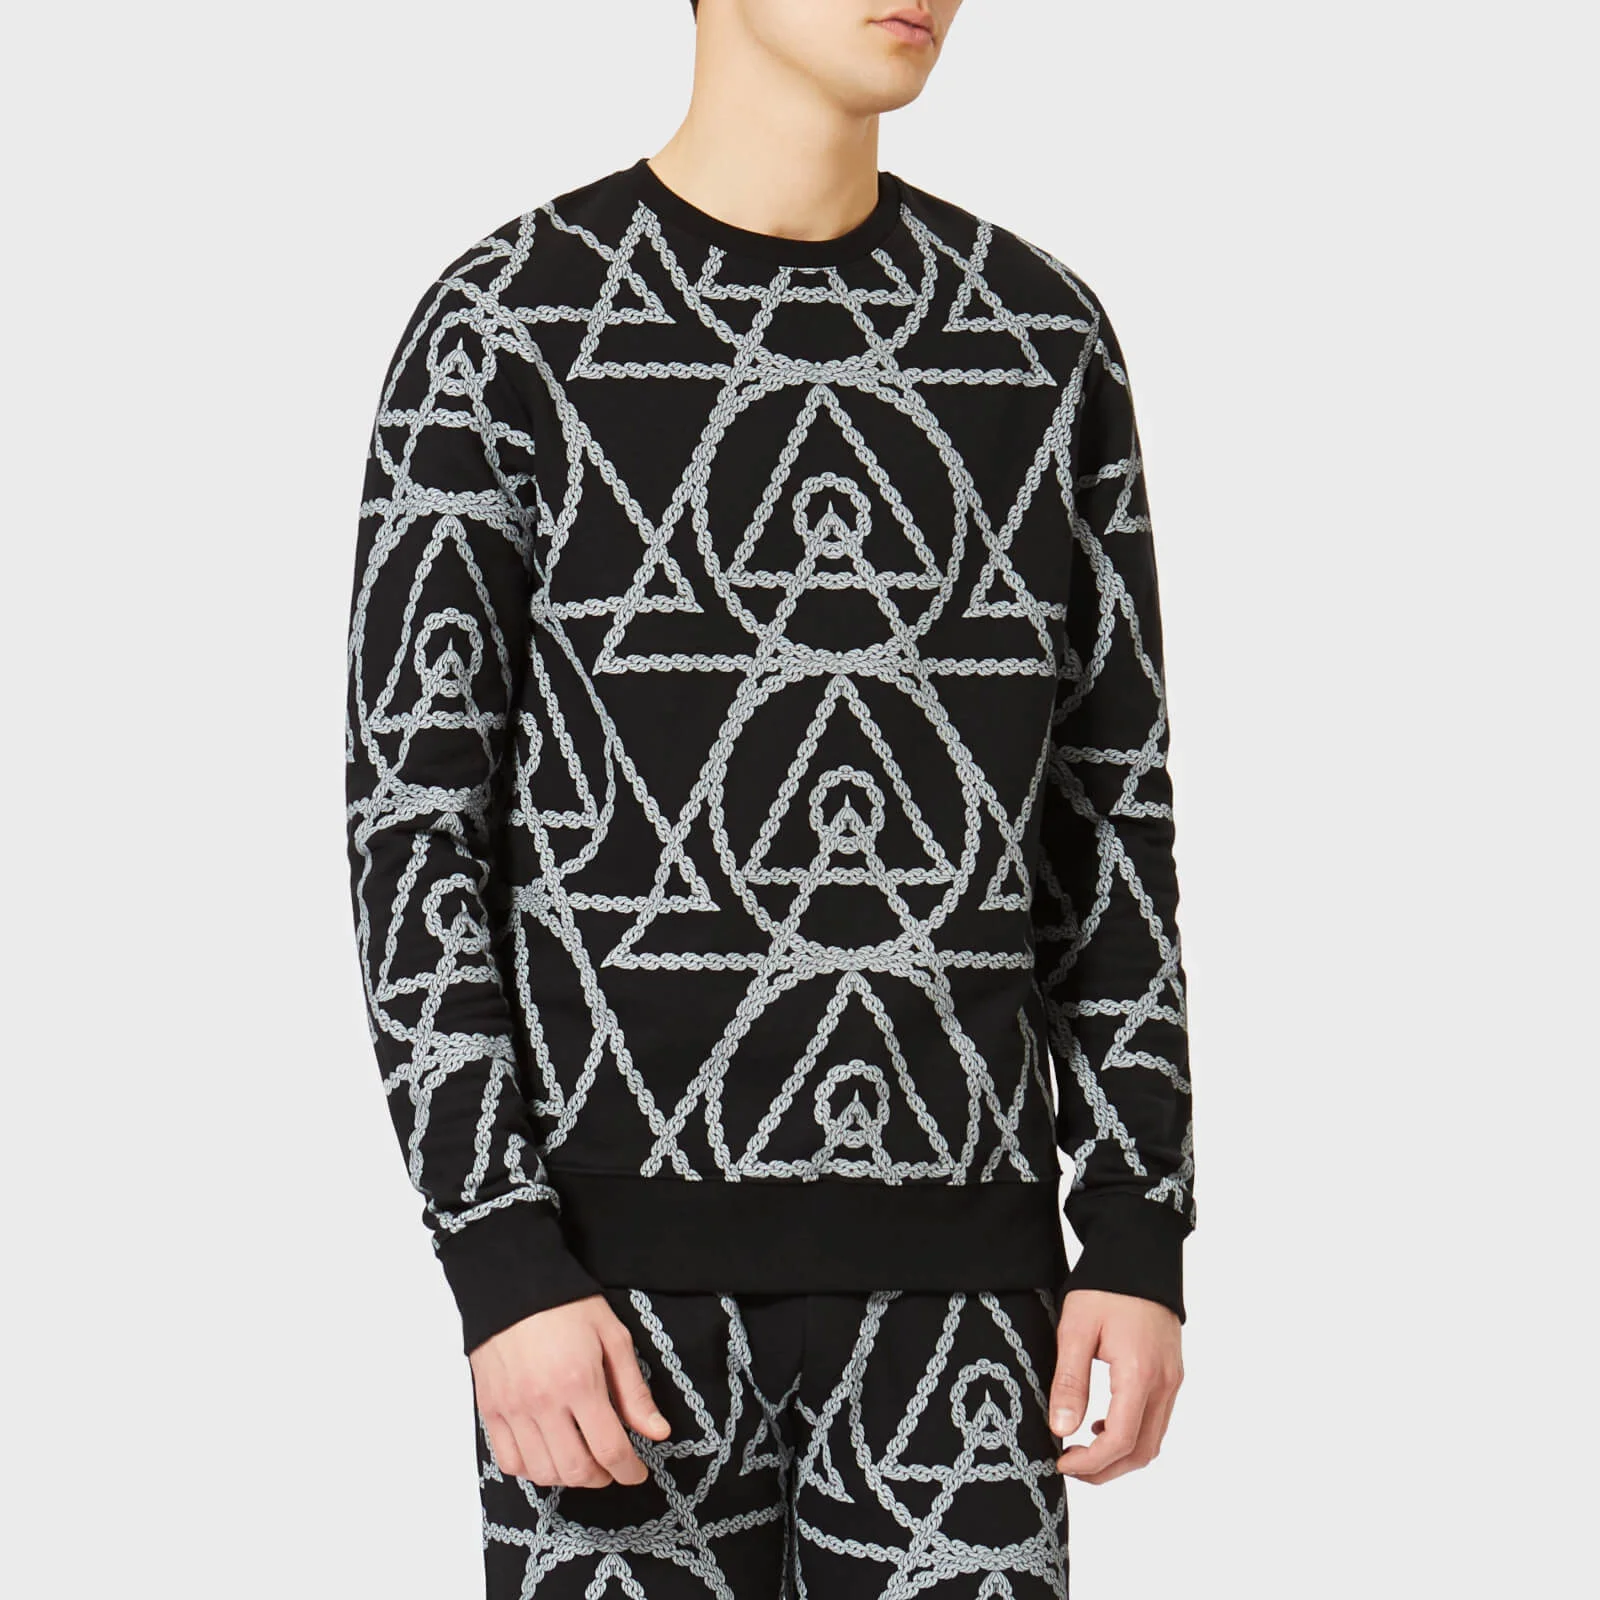 Avant L'Oeil Men's Rope Print Sweatshirt - Black Image 1